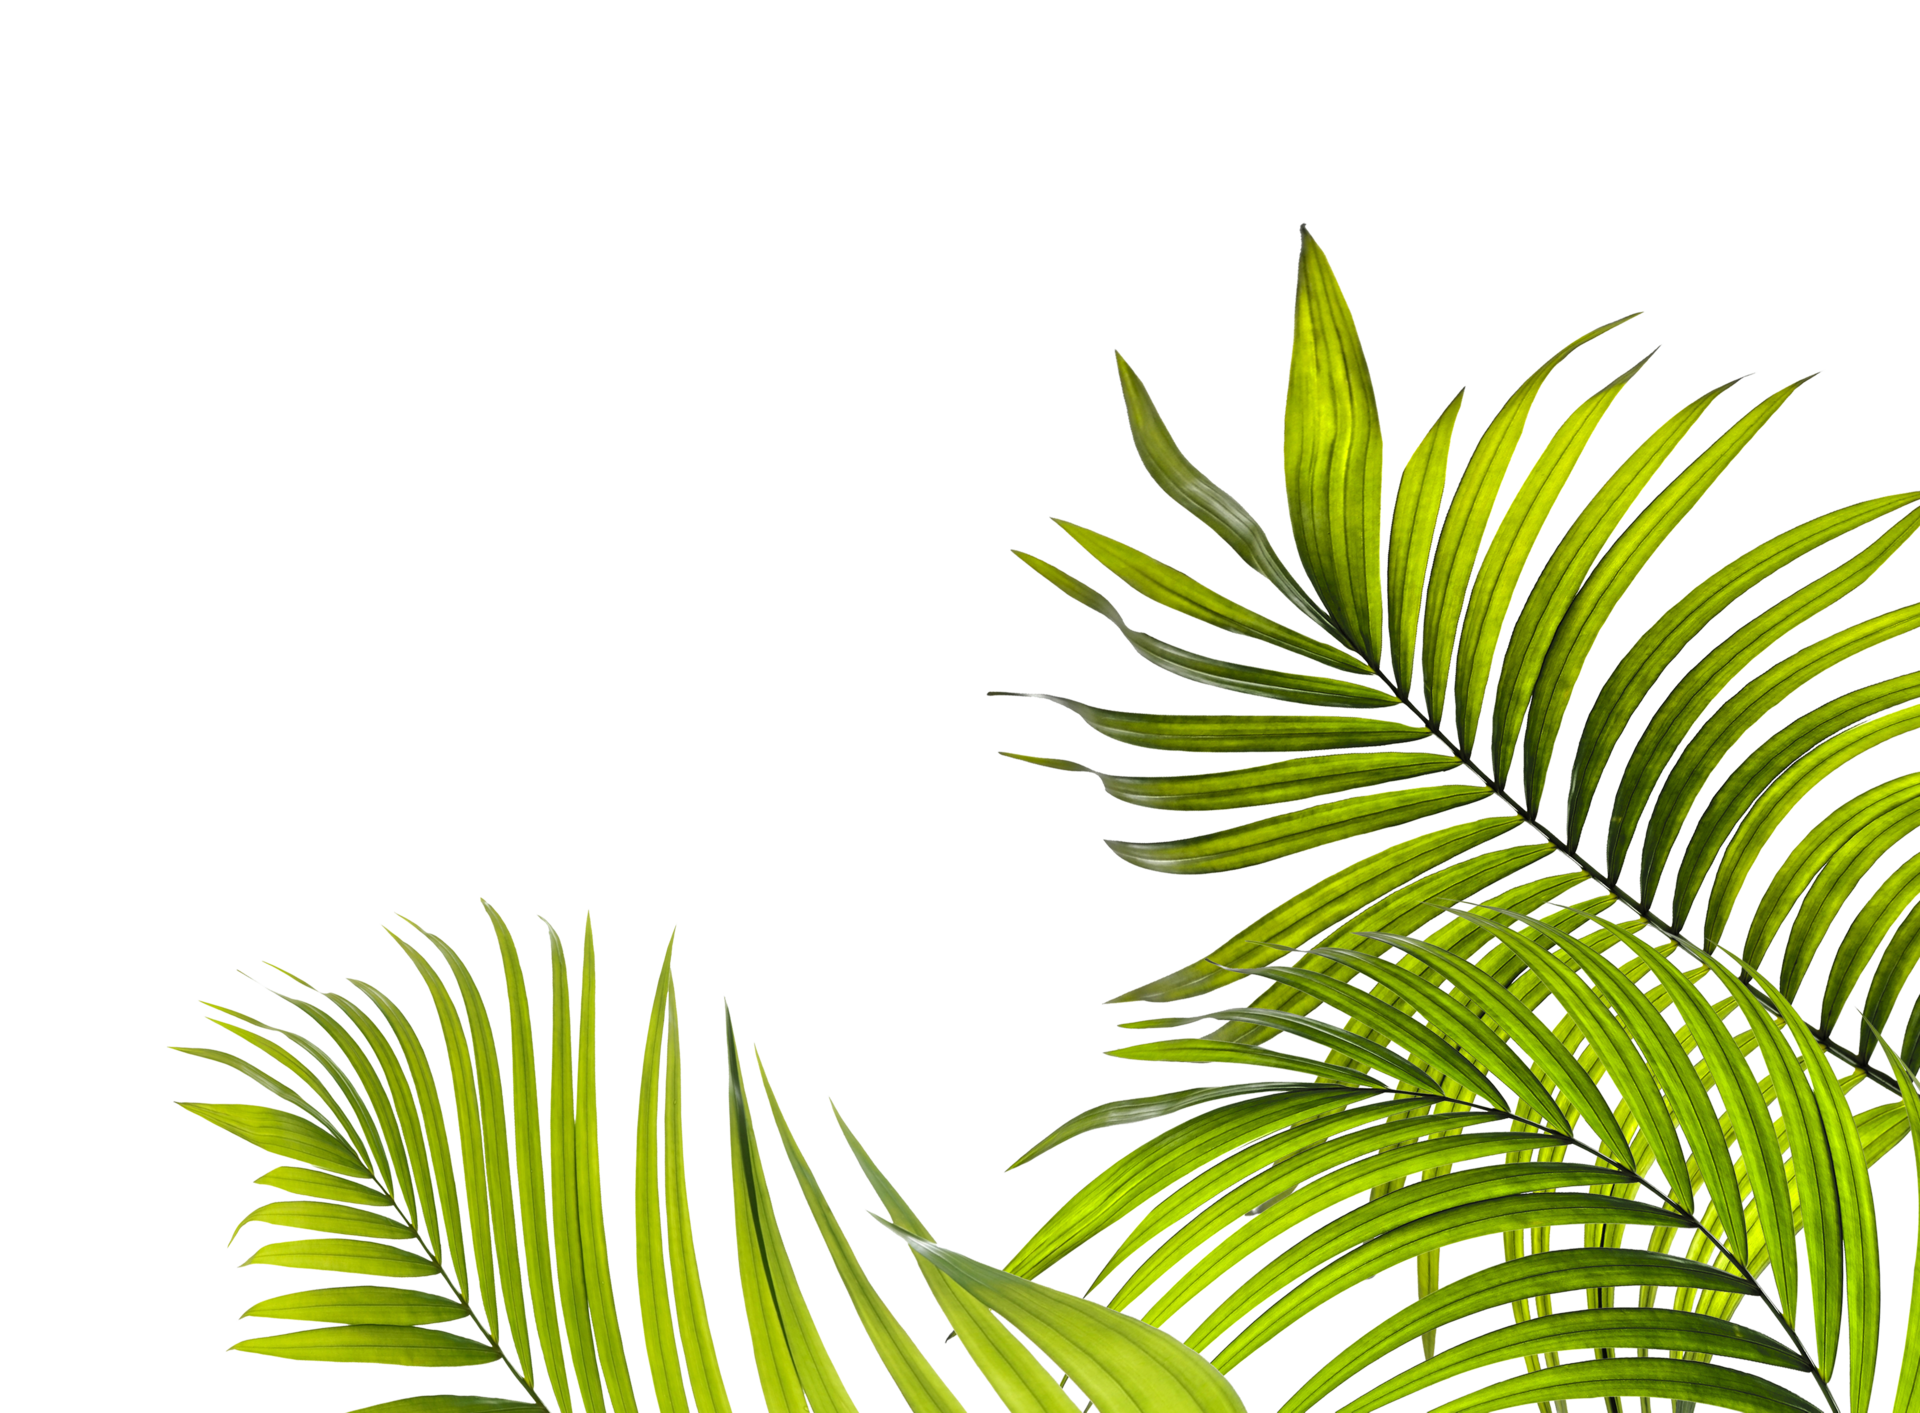 Tận hưởng vẻ đẹp thiên nhiên với tập tin PNG lá xanh của cây cọ trên nền trong suốt miễn phí để tải về. Bạn có thể sử dụng chúng cho bất kỳ dự án thiết kế nào của mình và để mang lại một niềm vui mới cho bộ sưu tập hình ảnh của bạn.